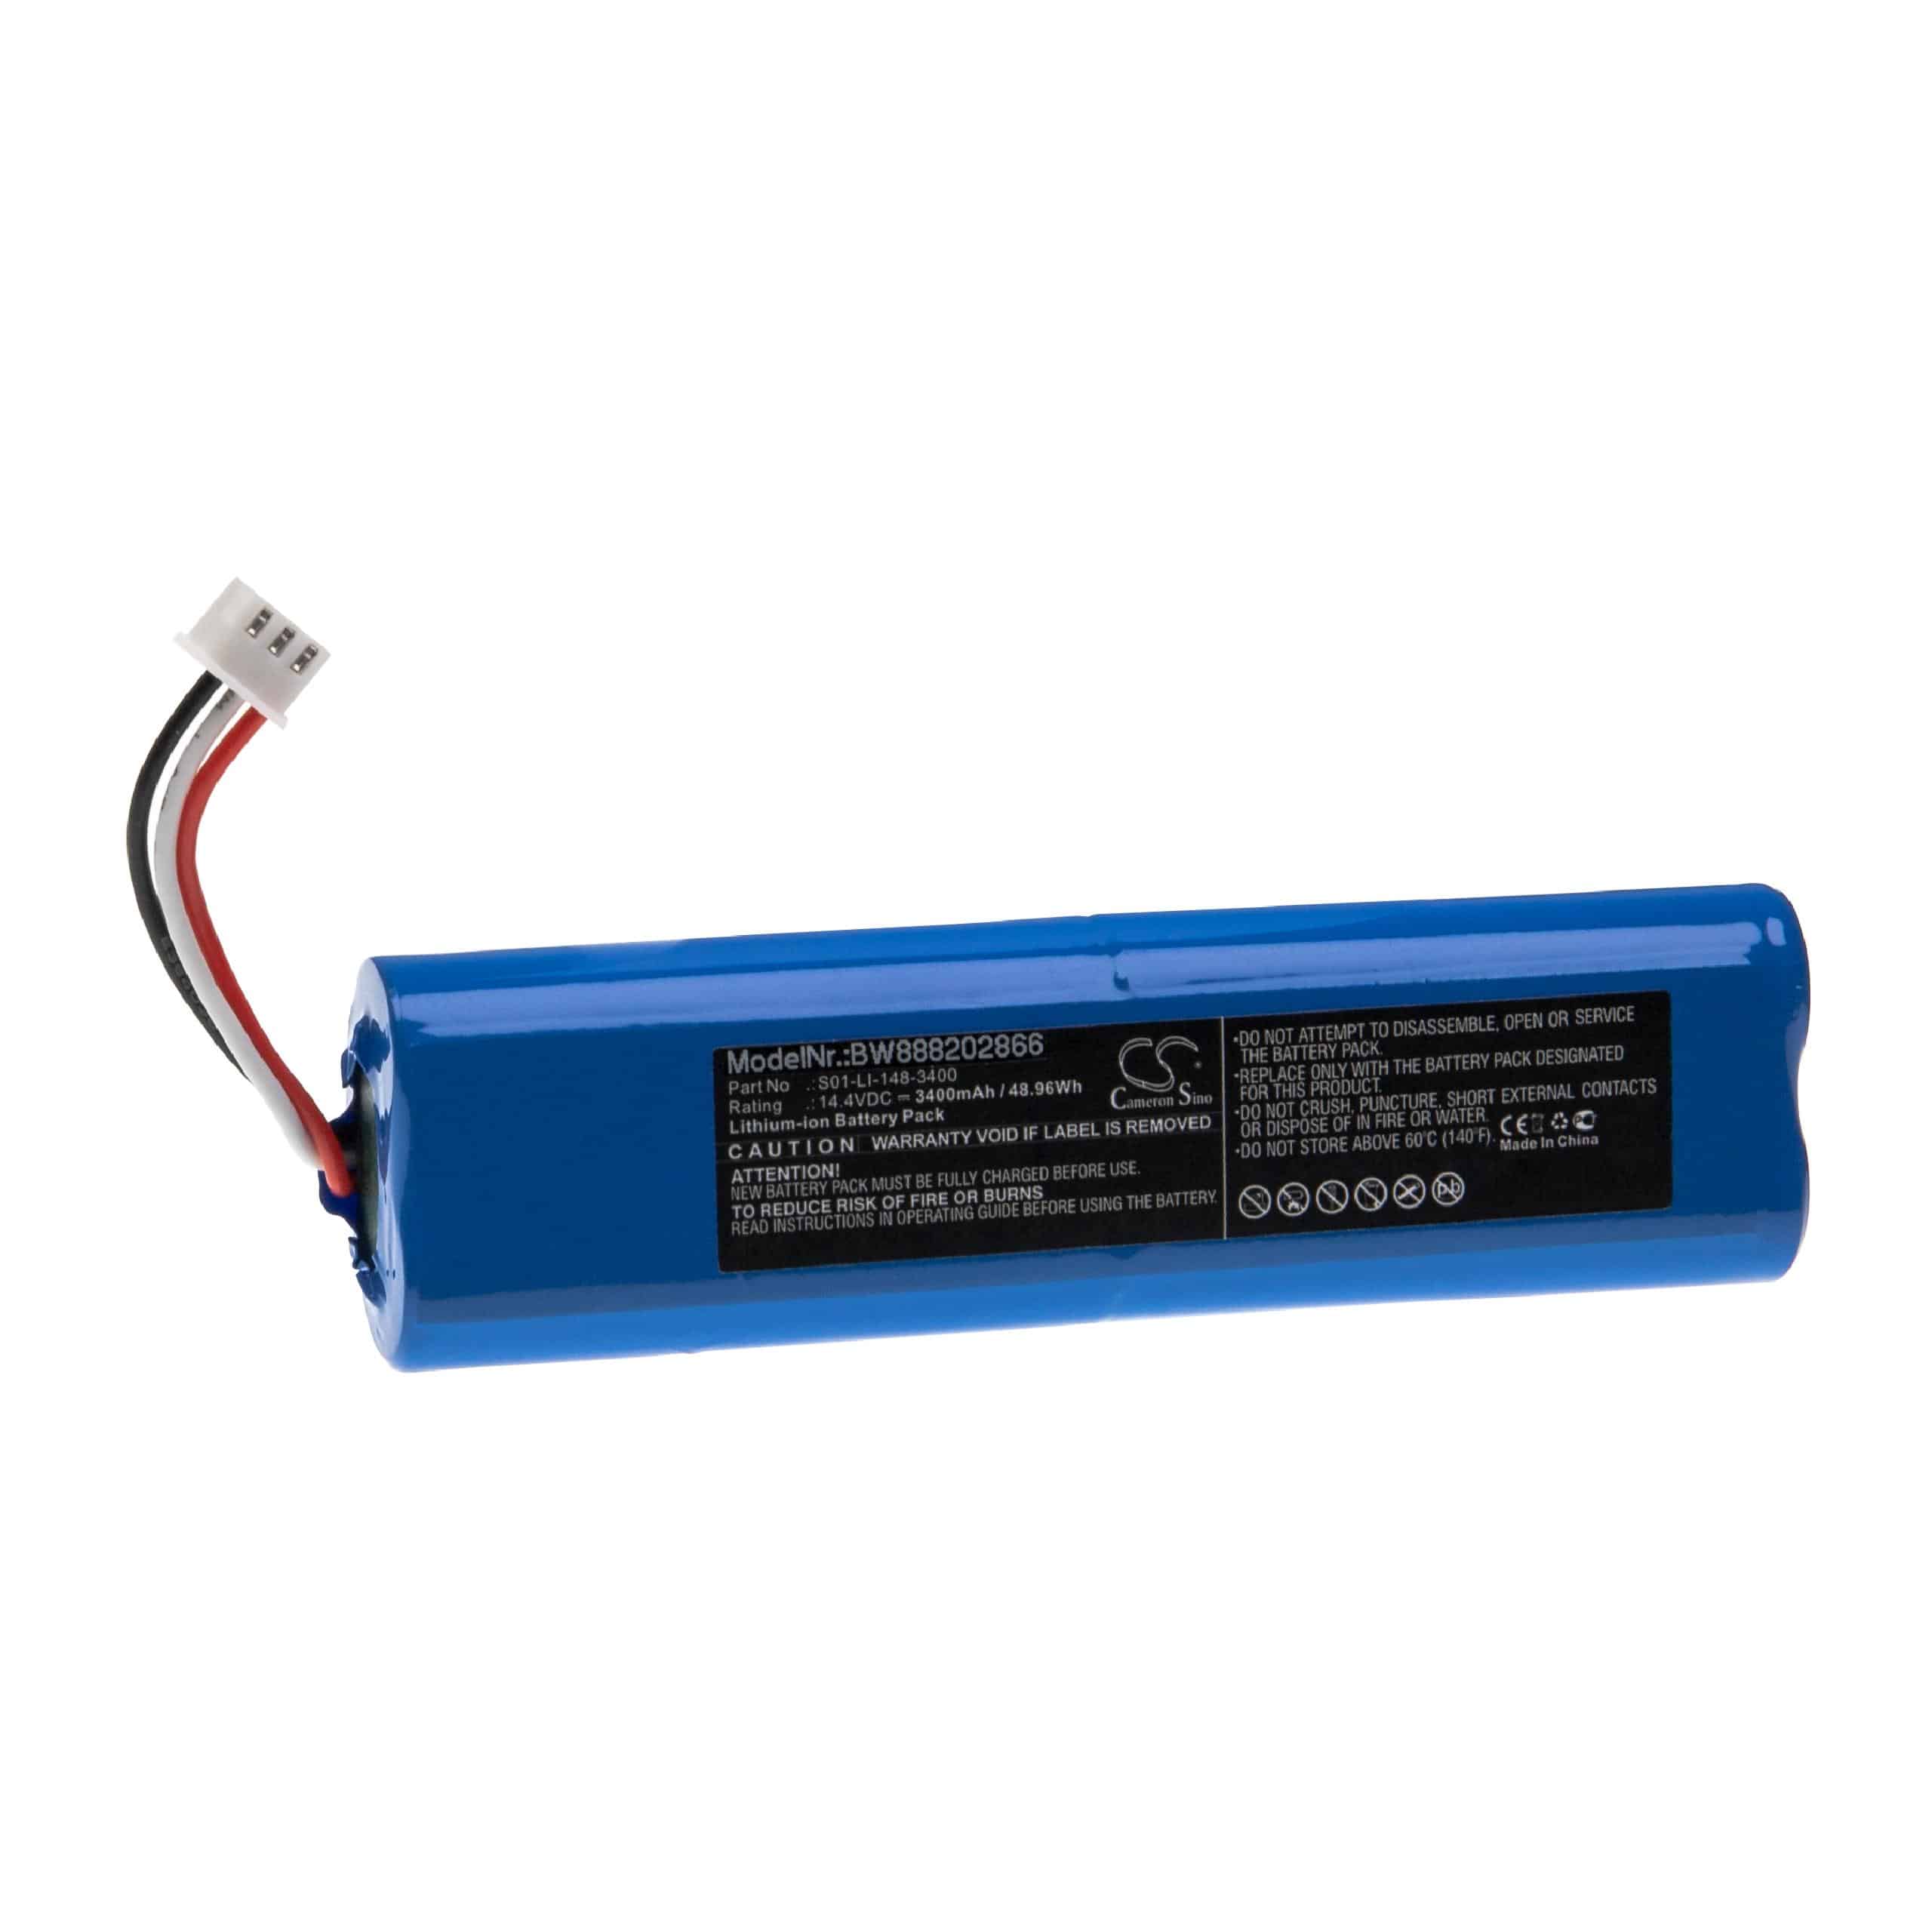 Batterie remplace Ecovacs S01-LI-148-2600, S01-LI-148-3200 pour robot aspirateur - 3400mAh 14,4V Li-ion